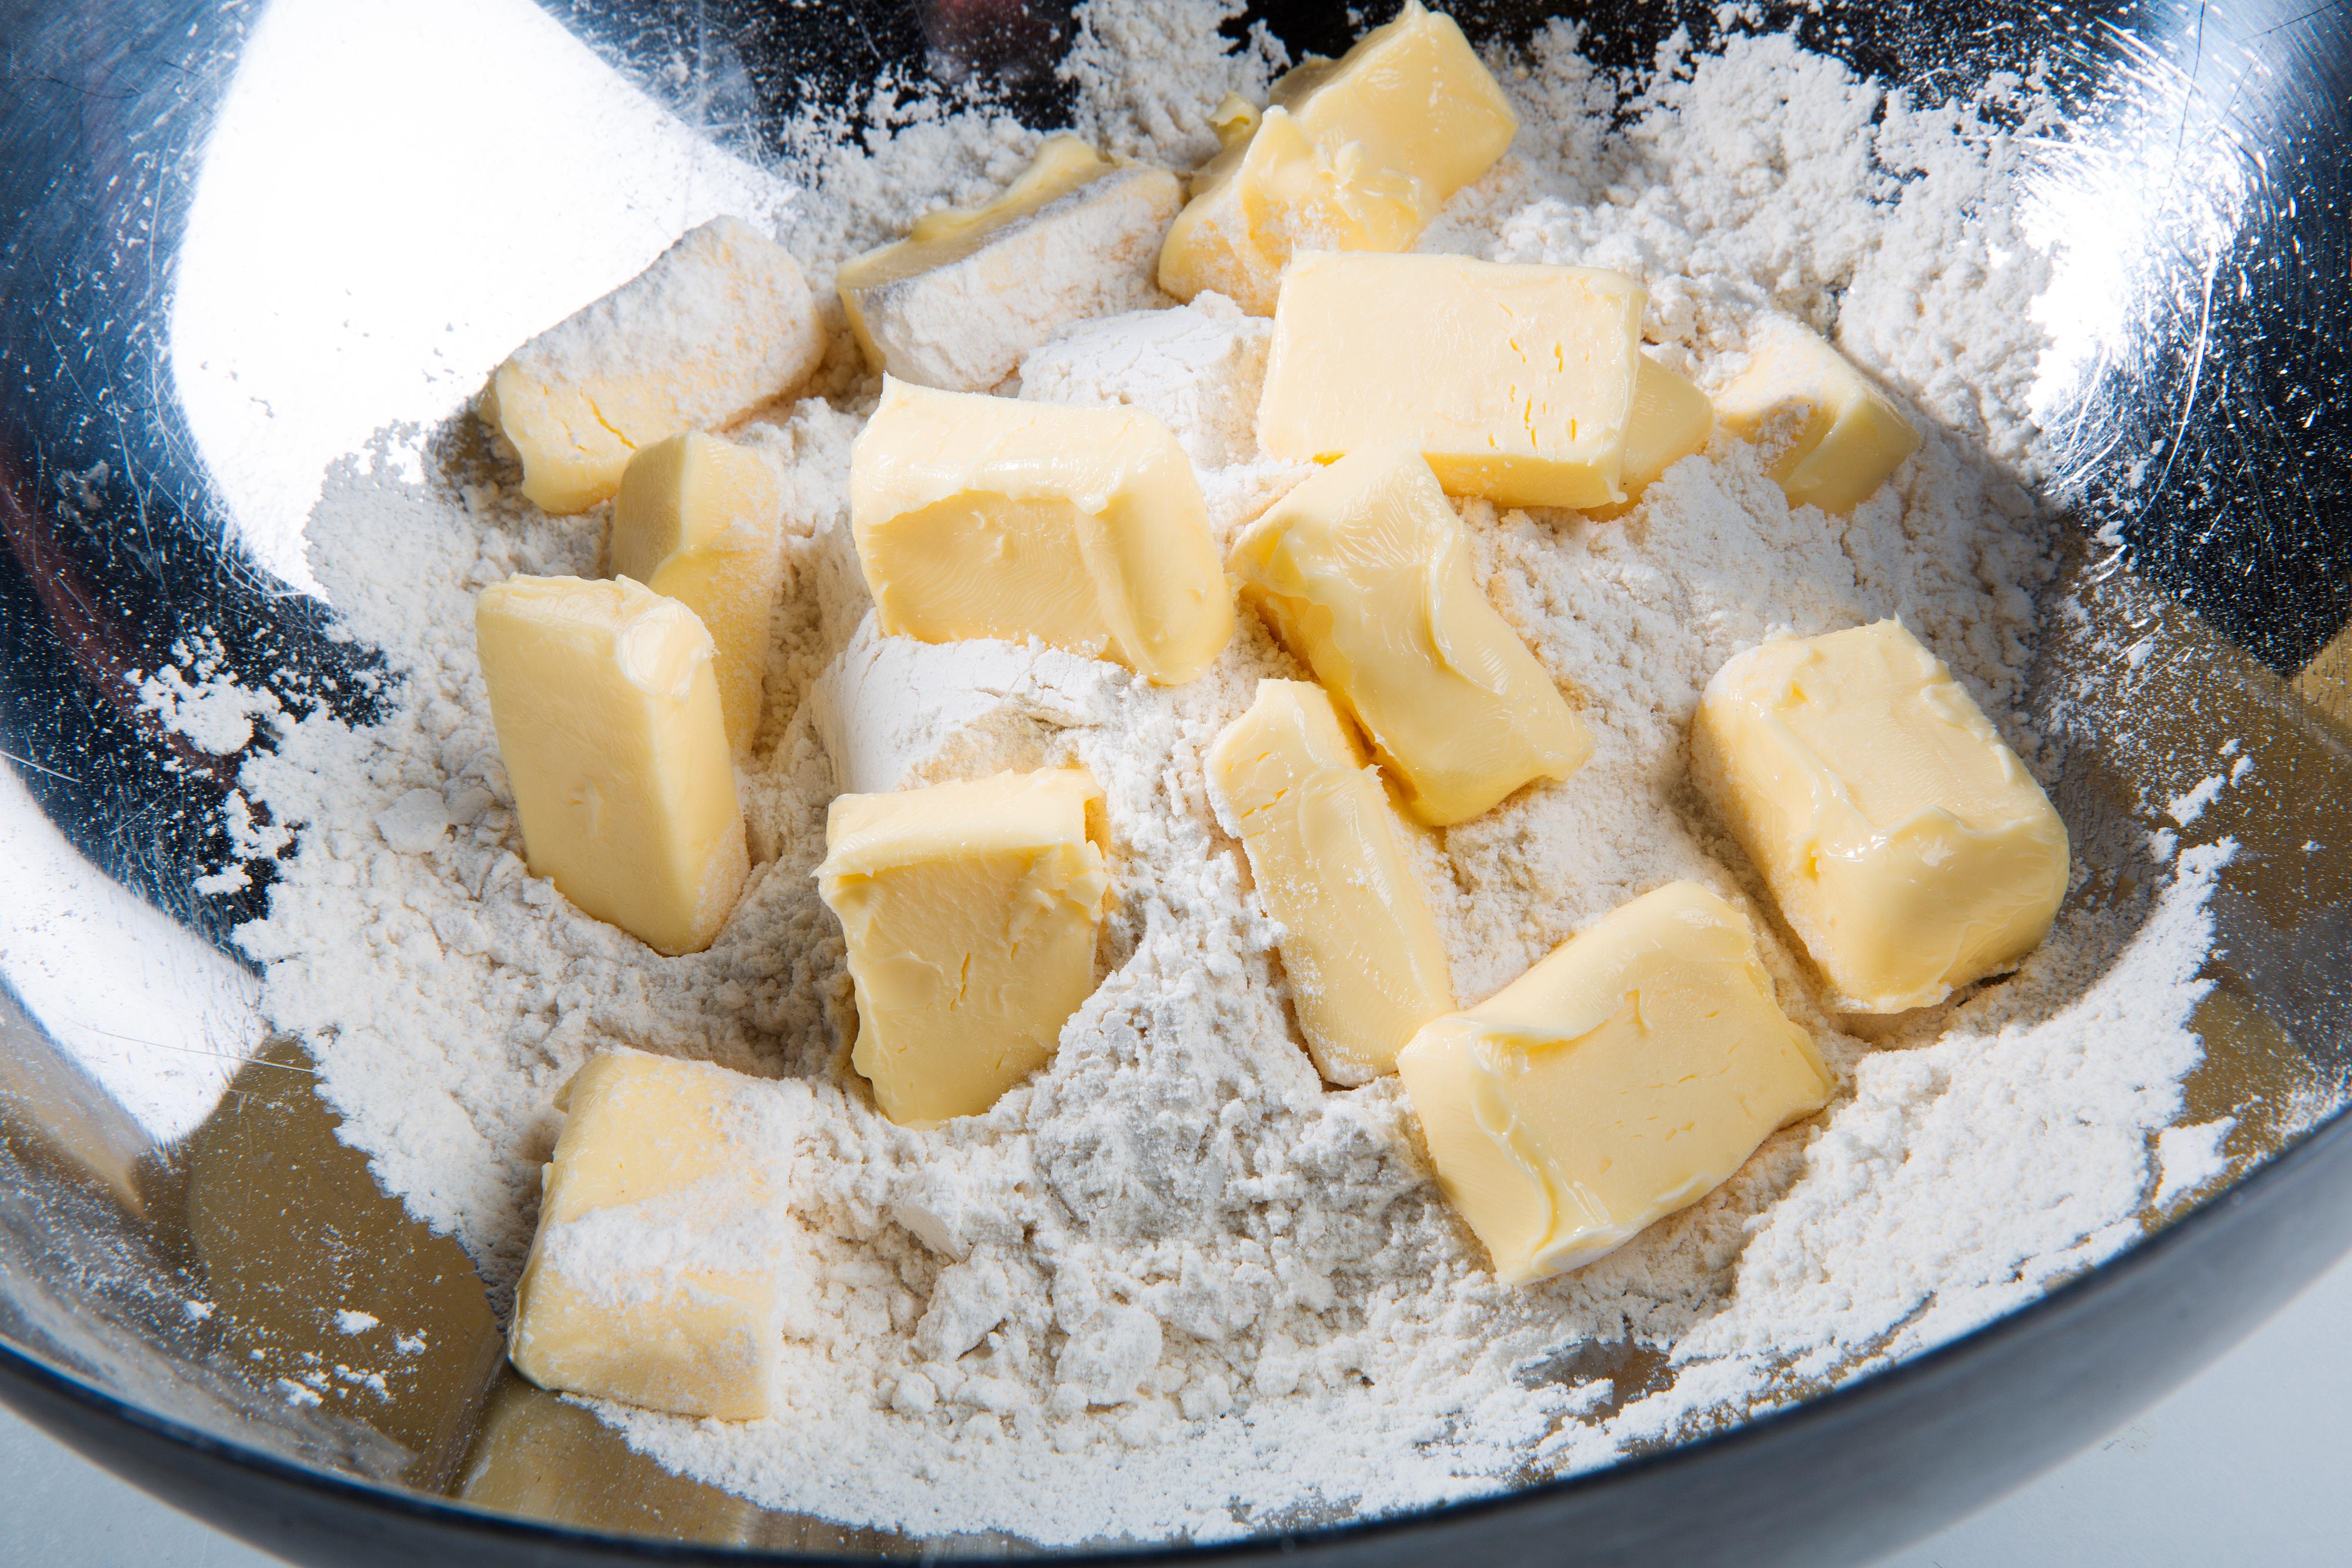 Bland sammen mel og romtemperert smør, tilsett vann og kna raskt sammen til en smidig deig.